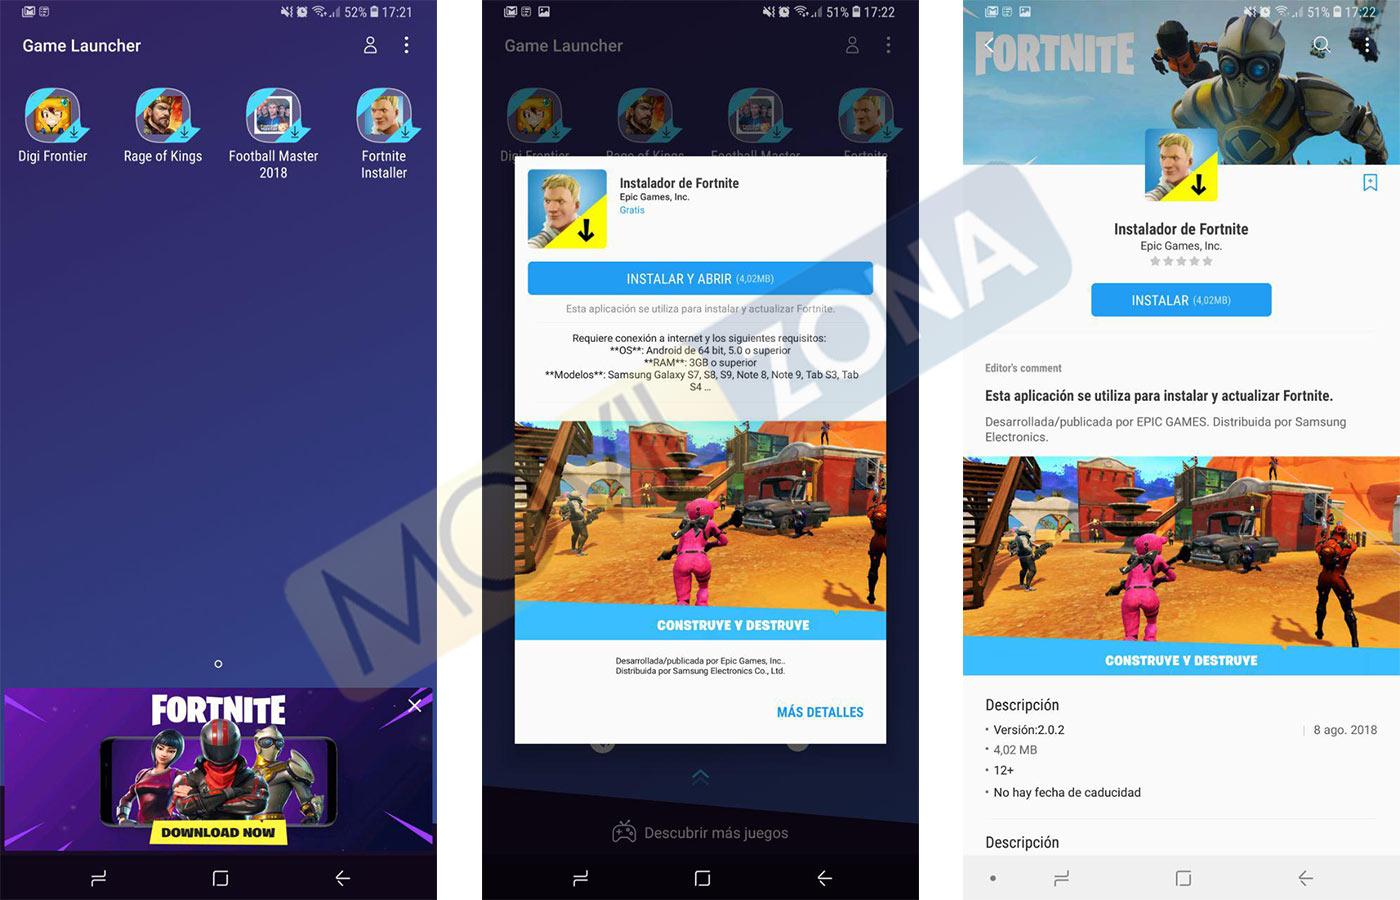 Fortnite para Android disponible en Game Laucher para los Samsung Galaxy